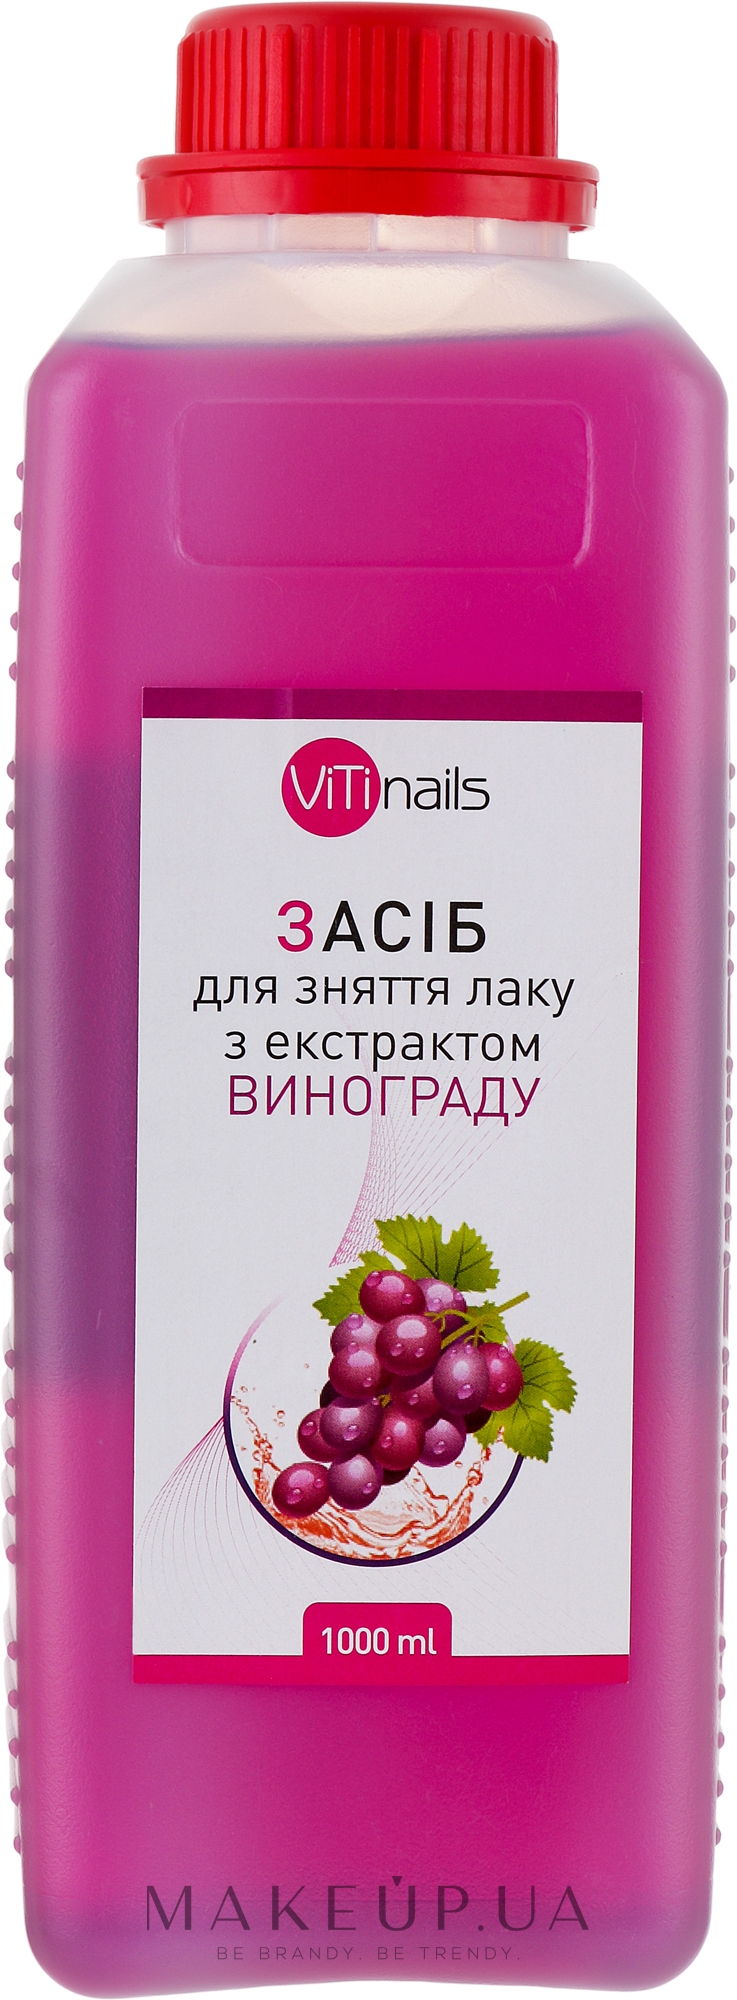 Рідина для зняття лаку з екстрактом винограду, кришка з контролем відкривання - ViTinails — фото 1000ml